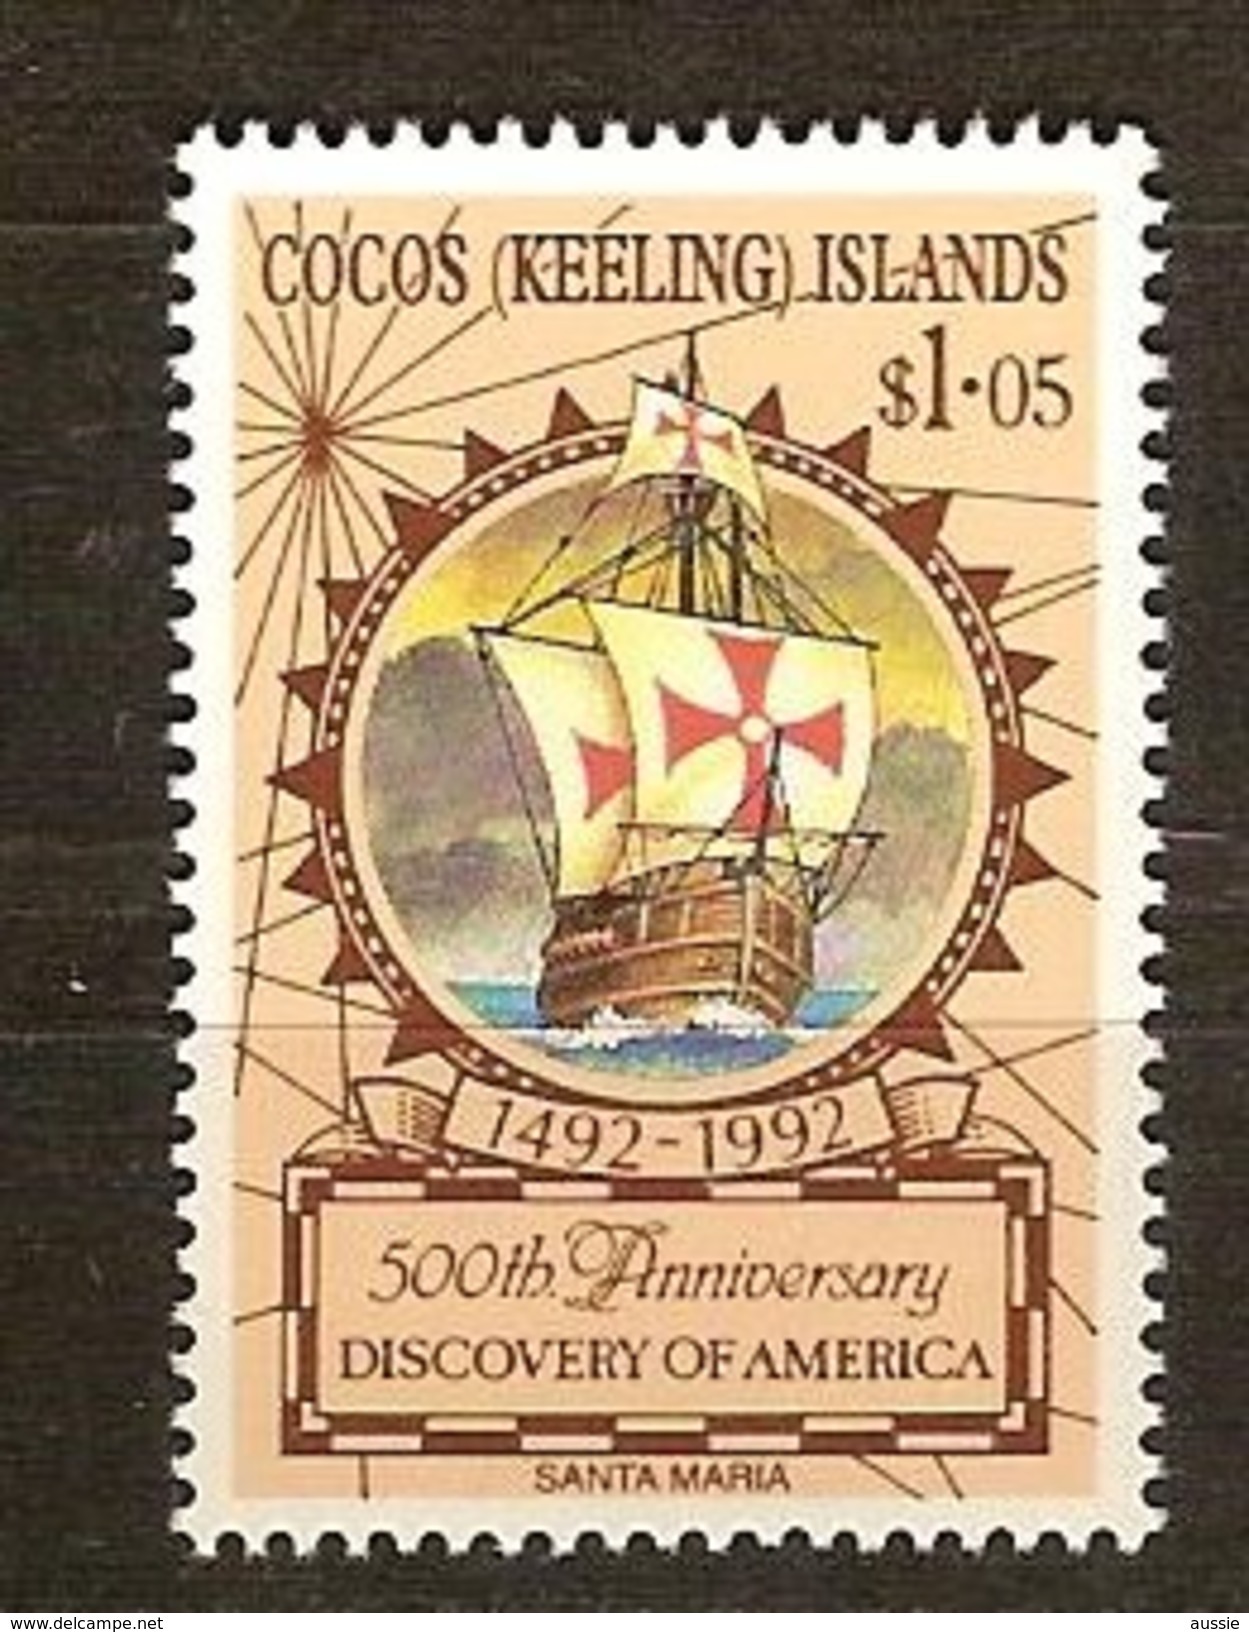 Cocos Keeling Islands 1992 Yvertn° 250 ***  MNH Cote 4 Euro Bateaux Ships Schepen - Kokosinseln (Keeling Islands)